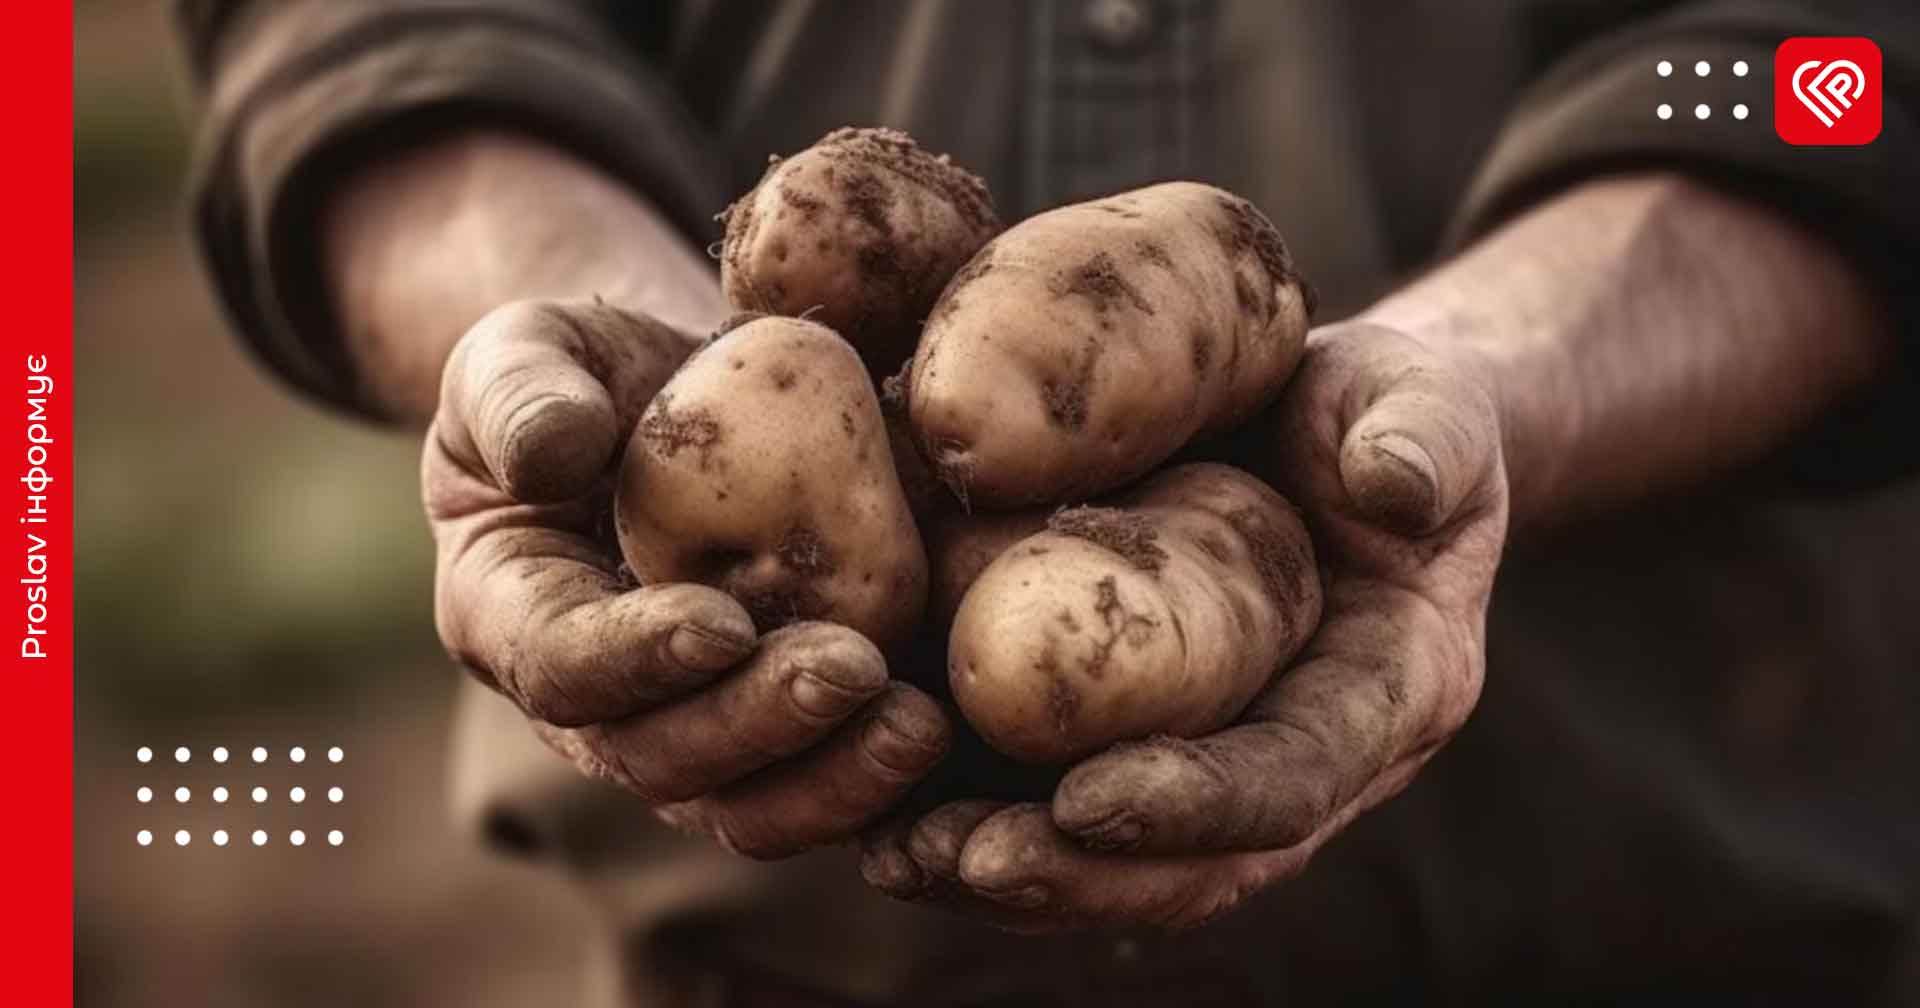 26 липня – святого Єрмолая: з цього дня в народі прийнято копати картоплю й збирати яблука